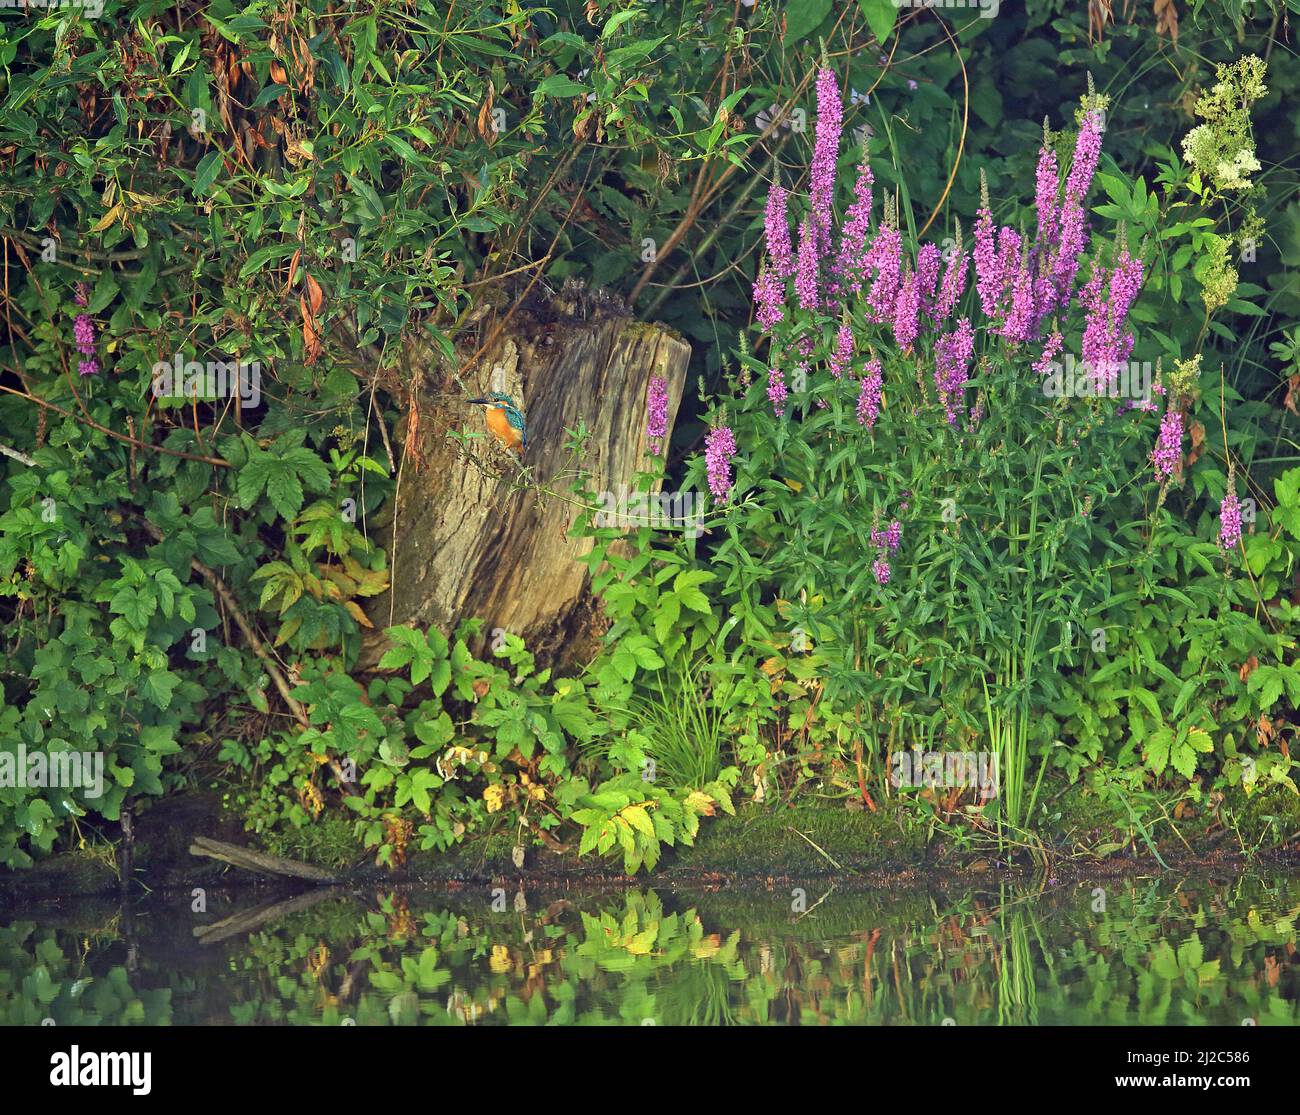 Kingfisher thront am Fluss neben großen violetten Blumen Stockfoto